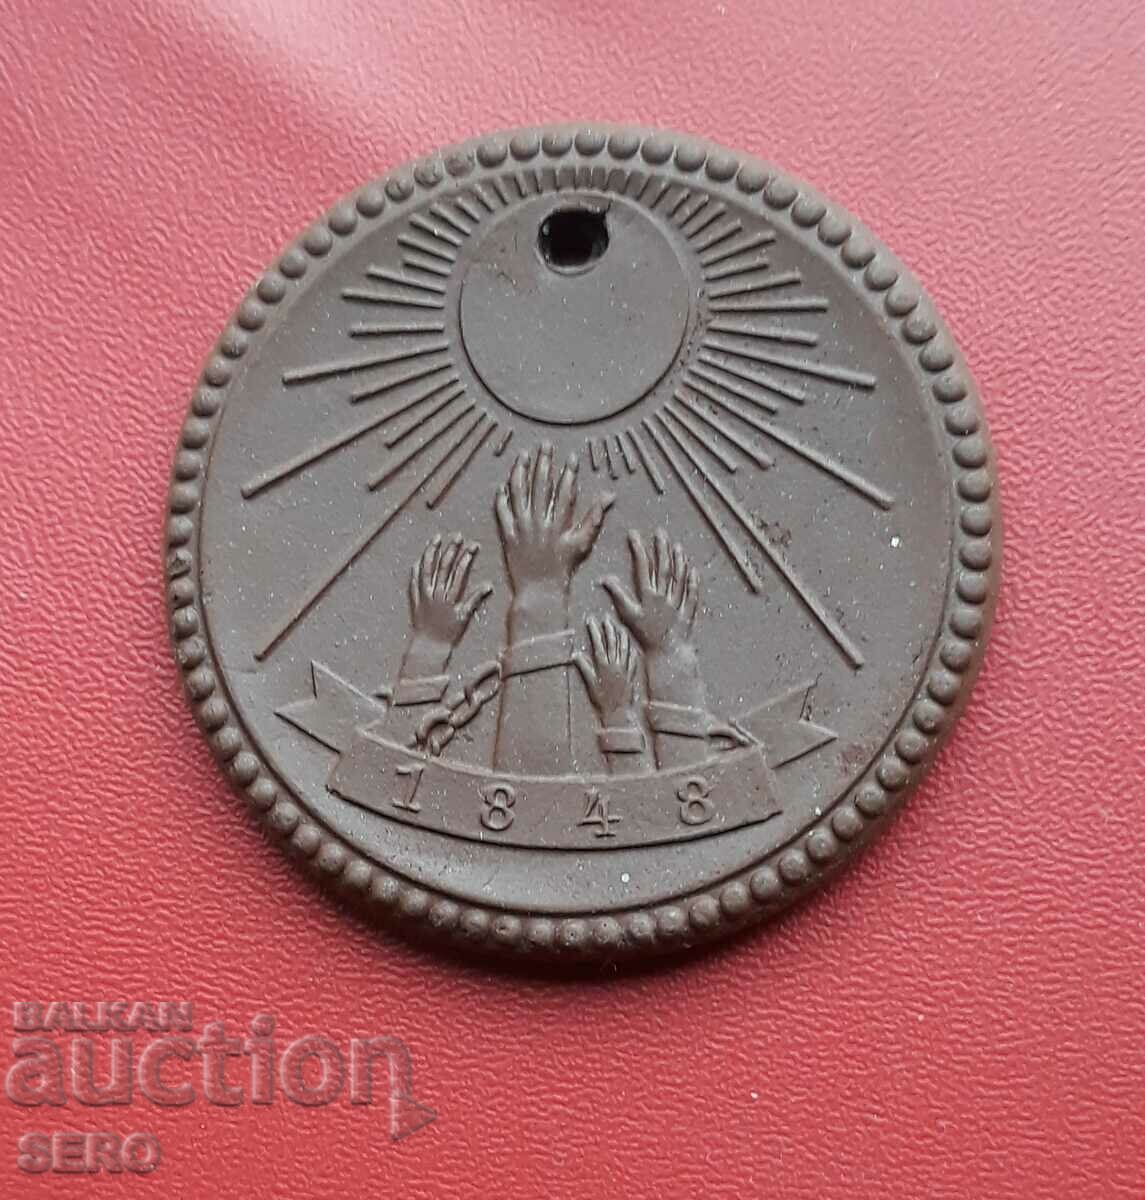 Germany-GDR-porcelain medal